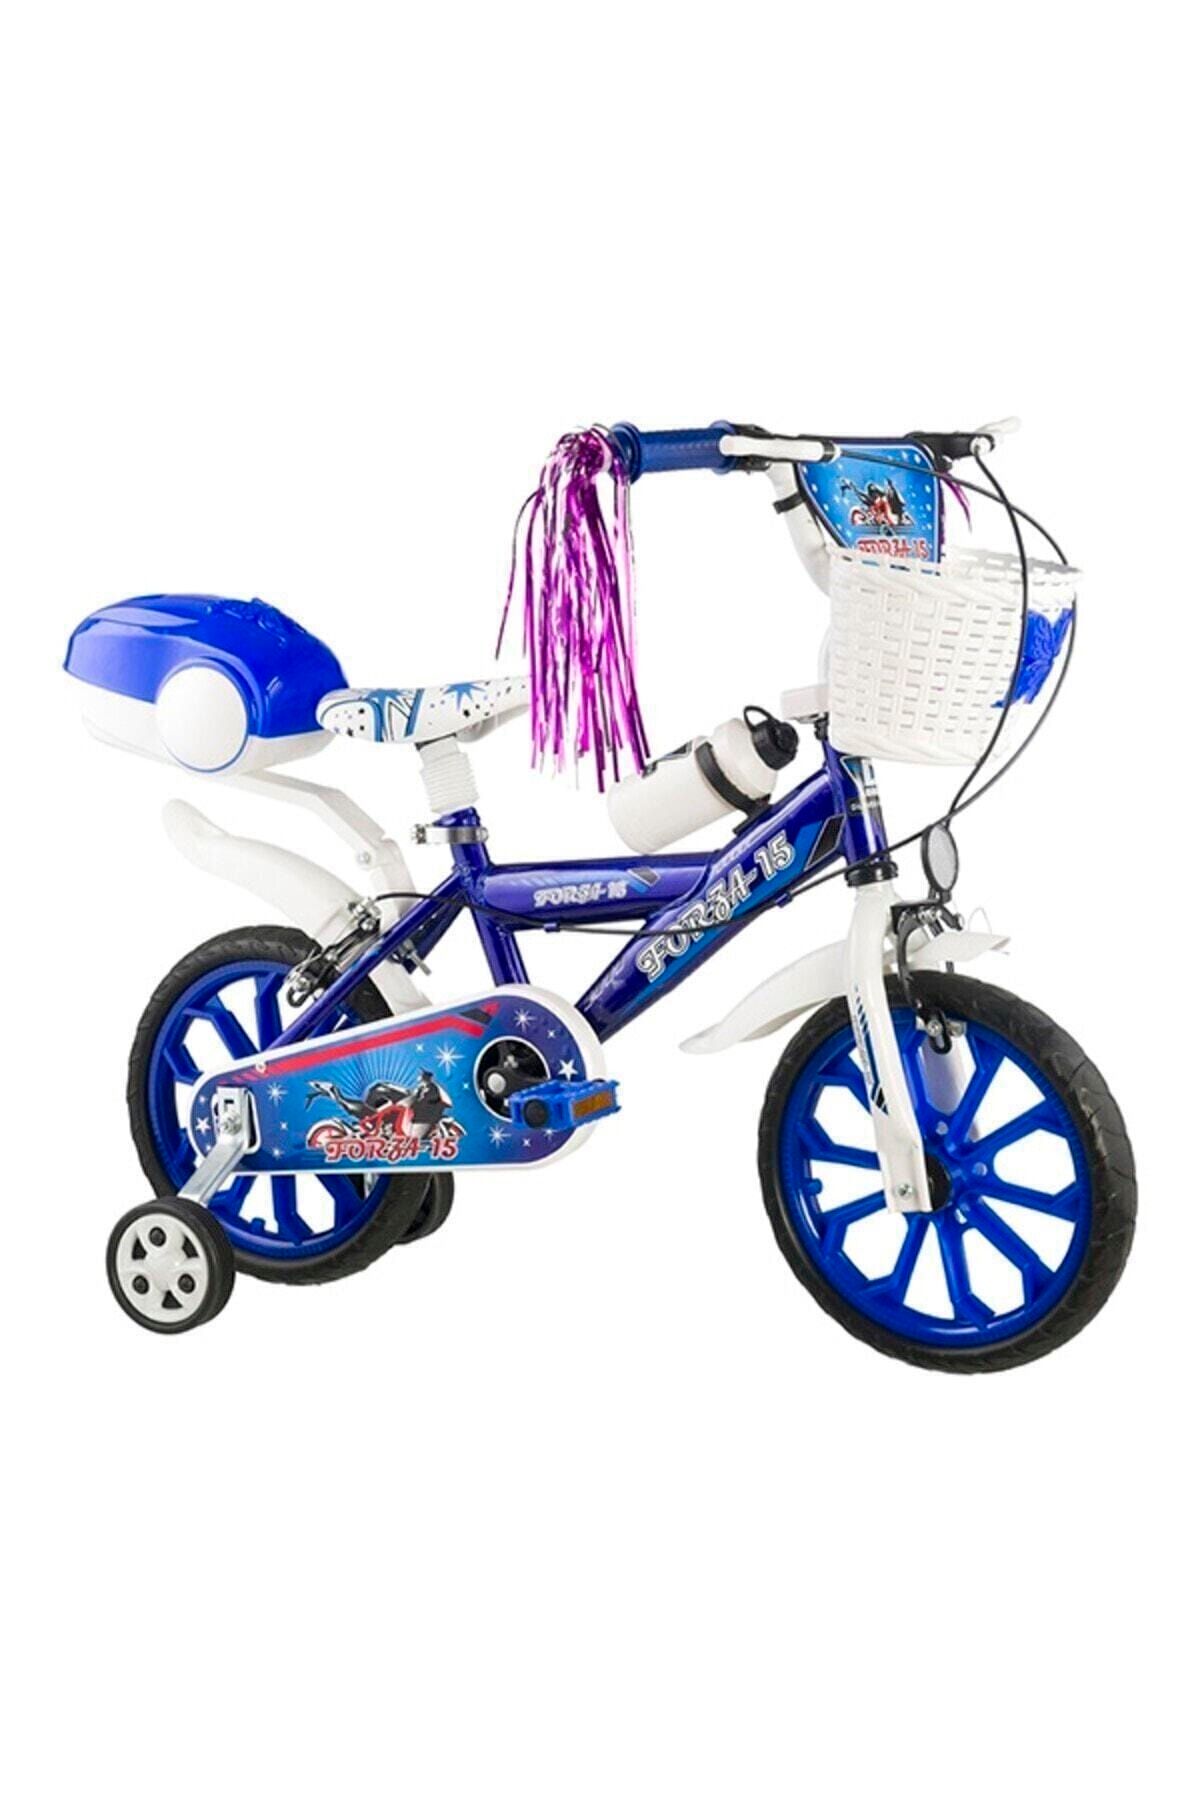 WINBEST Forza 15 Jant Lüx Çocuk Bisikleti ( 4-5-6-7 Yaş Arası Uygundur.)